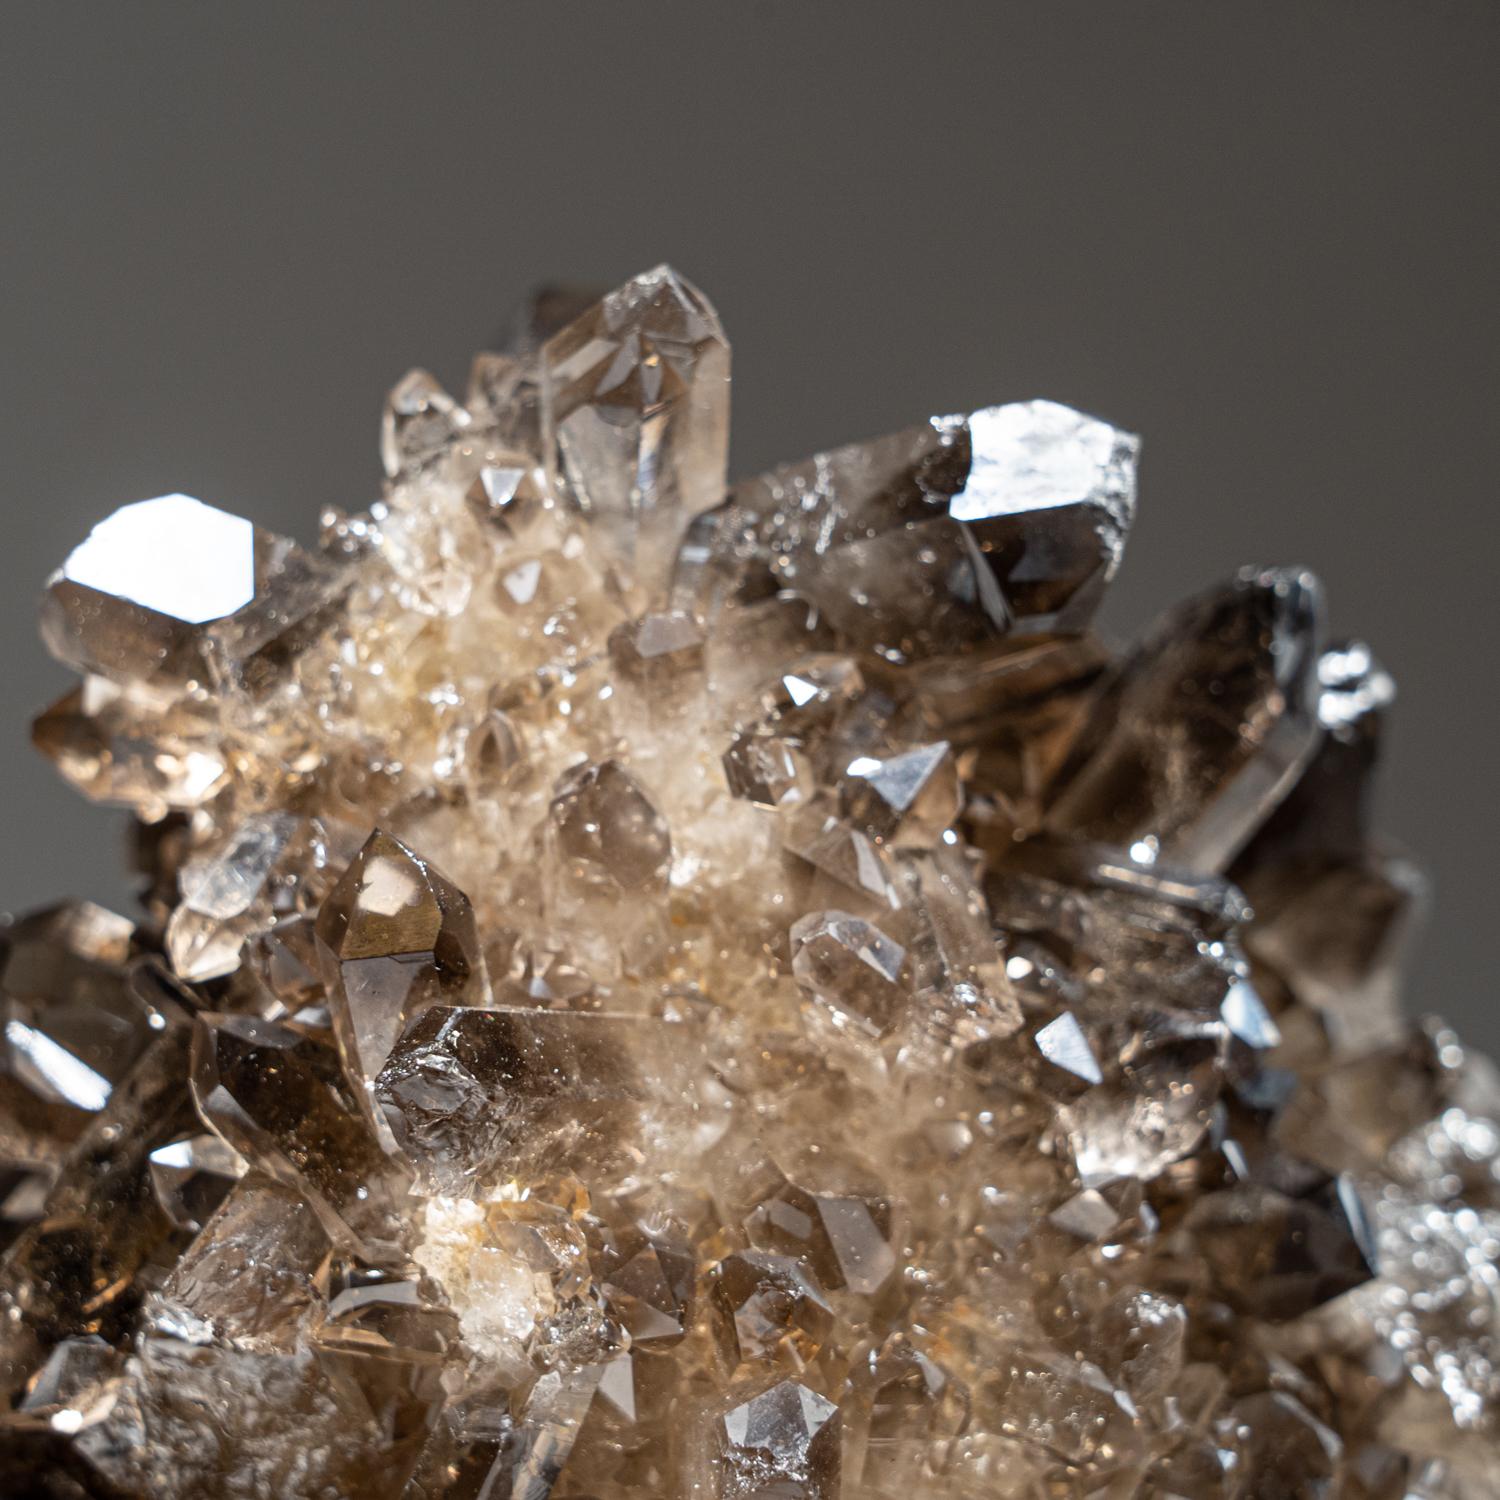 Contemporary Genuine Smoky Quartz Crystal Cluster from Mina Gerais, Brazil (6.4 lbs) For Sale